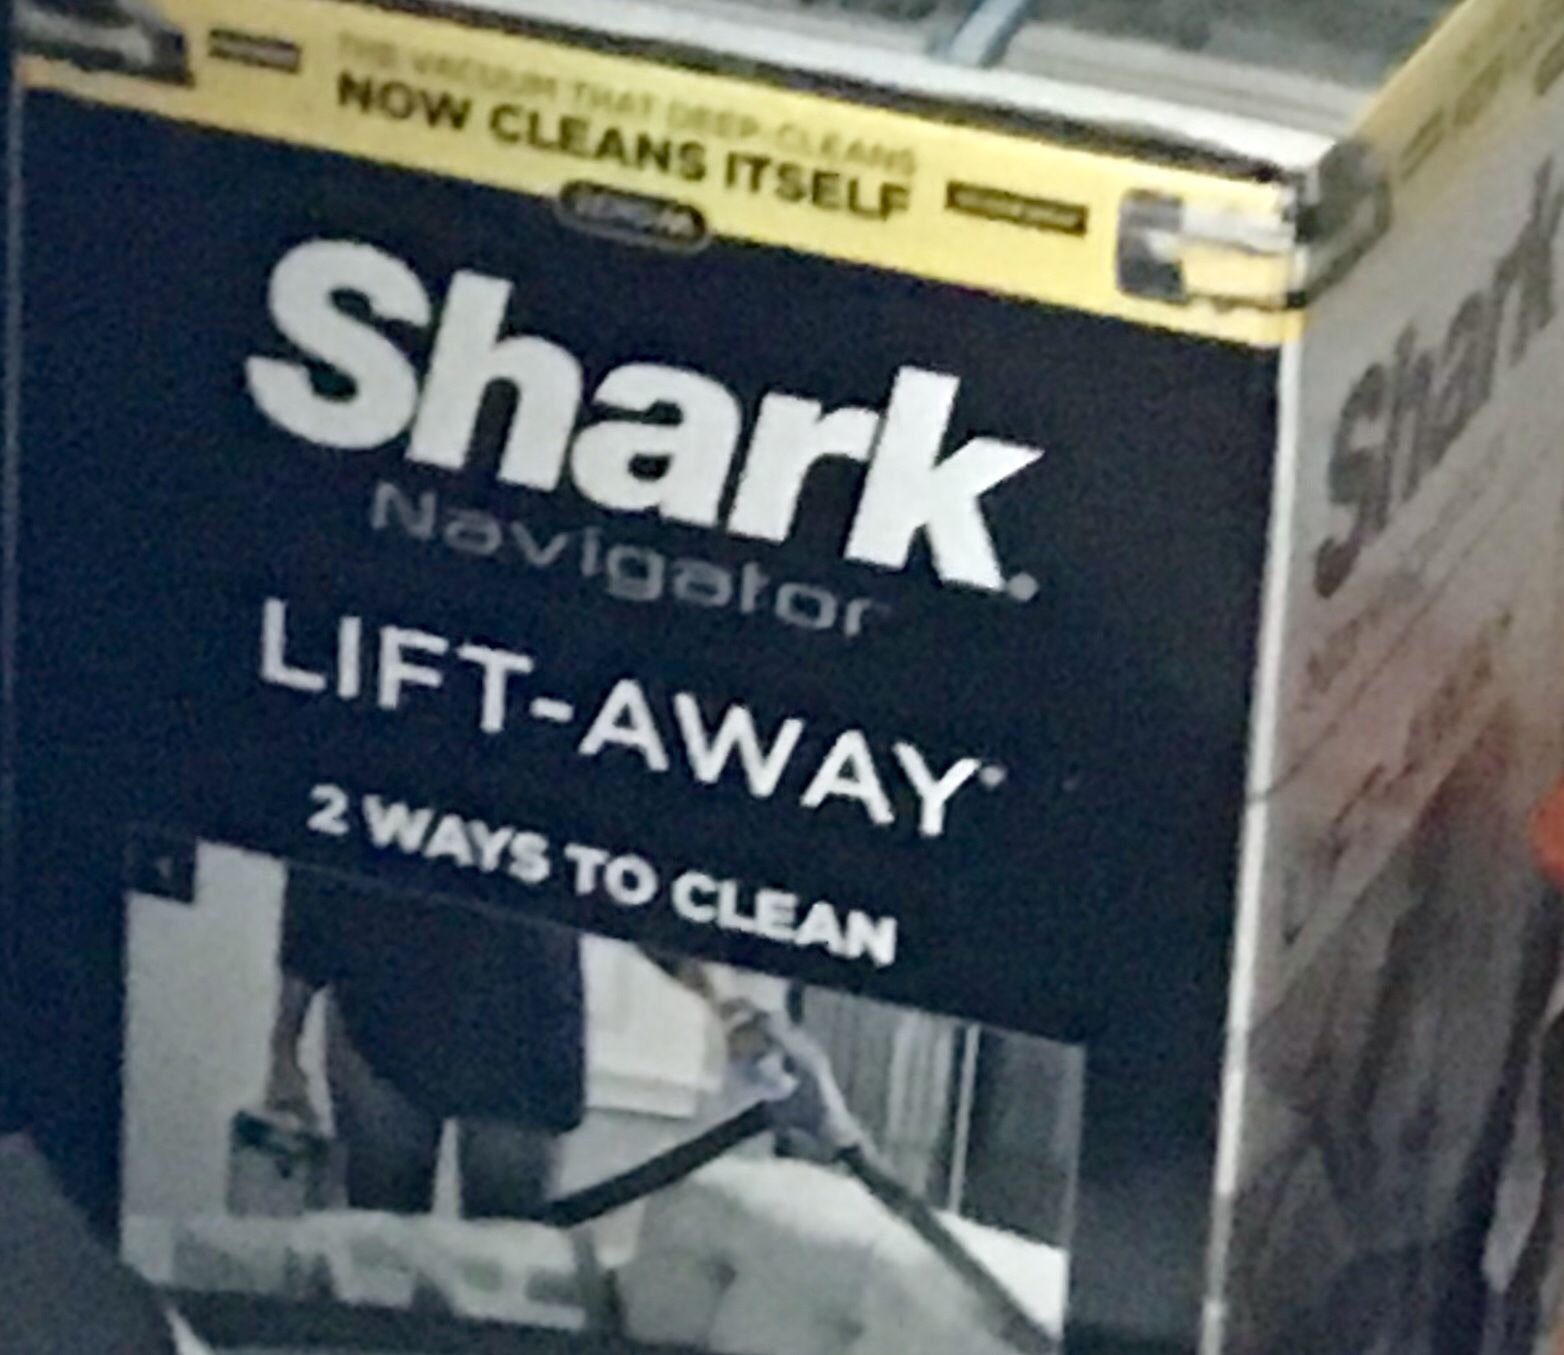 Shark lift away vacuum